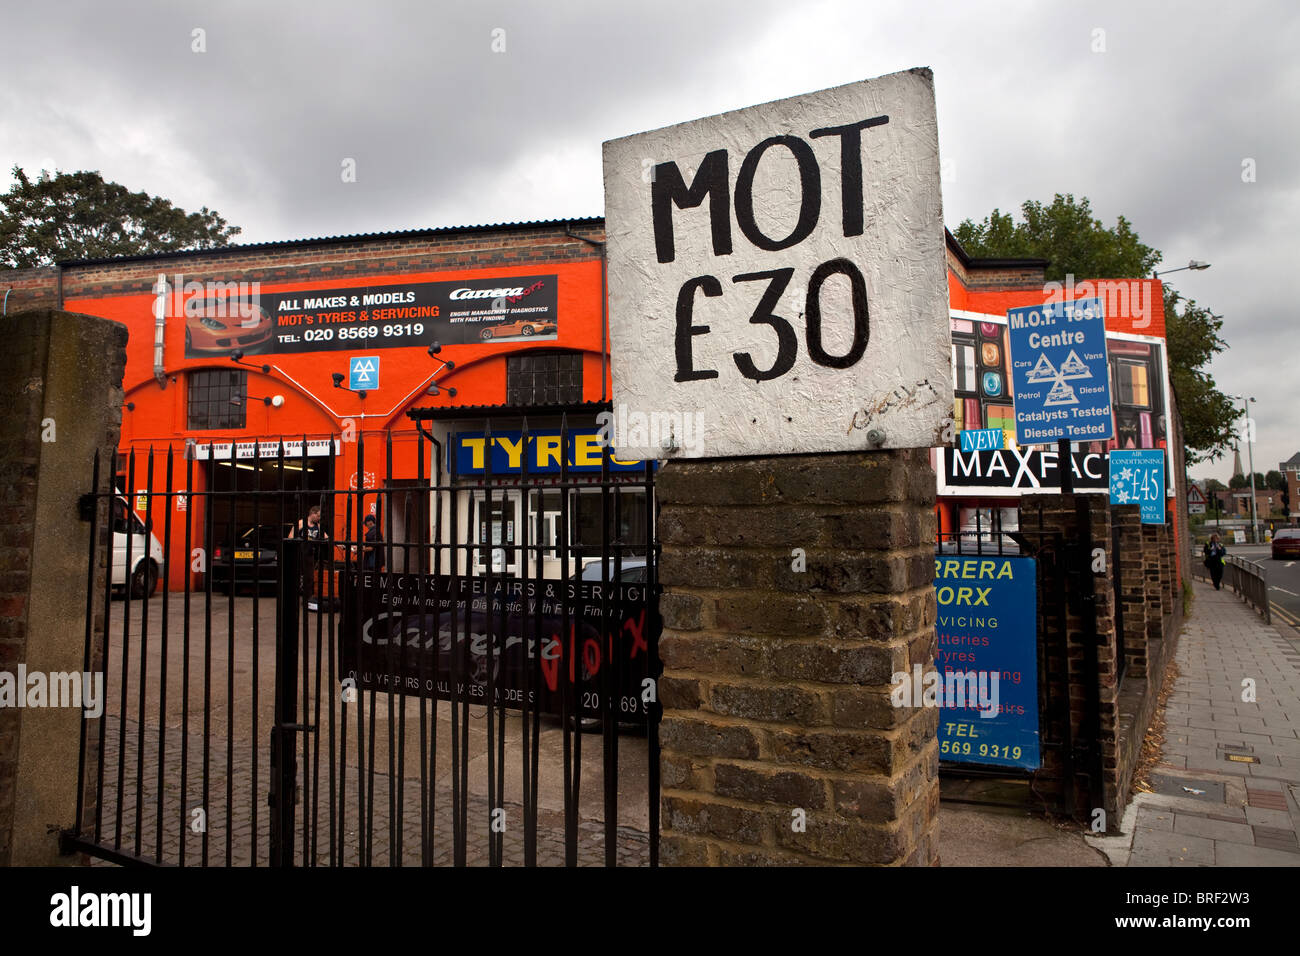 Garage displaying MOT sign, Brentford, London Stock Photo